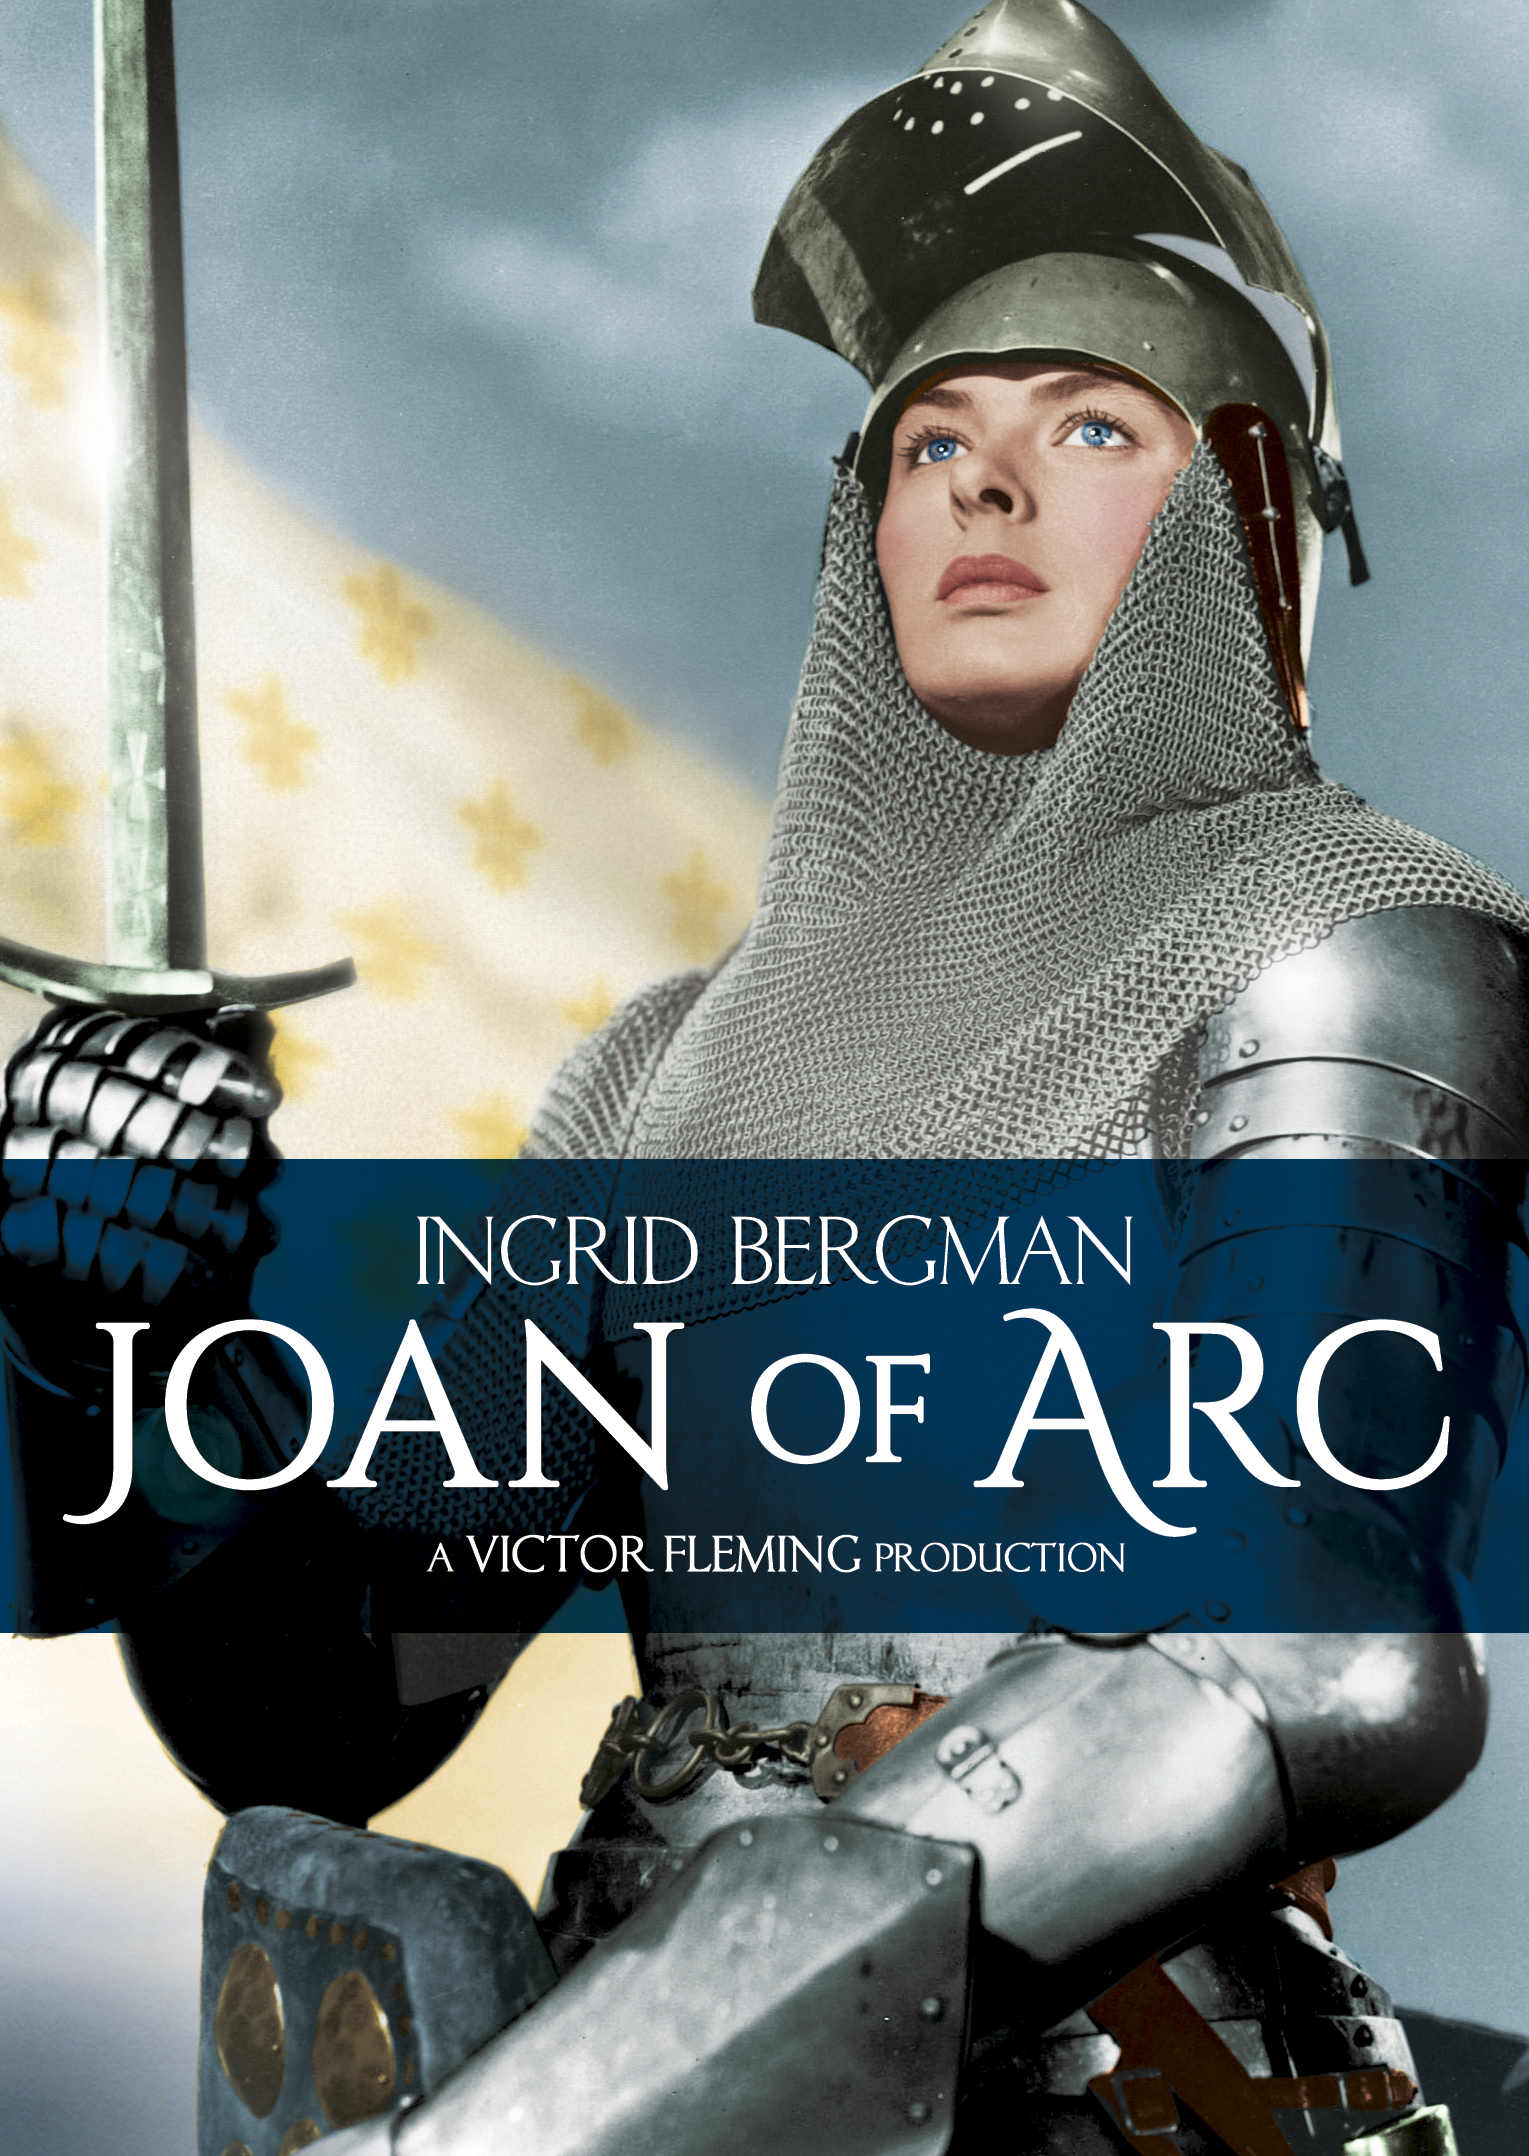 Joan of Arc [DVD] [1948] - Best Buy